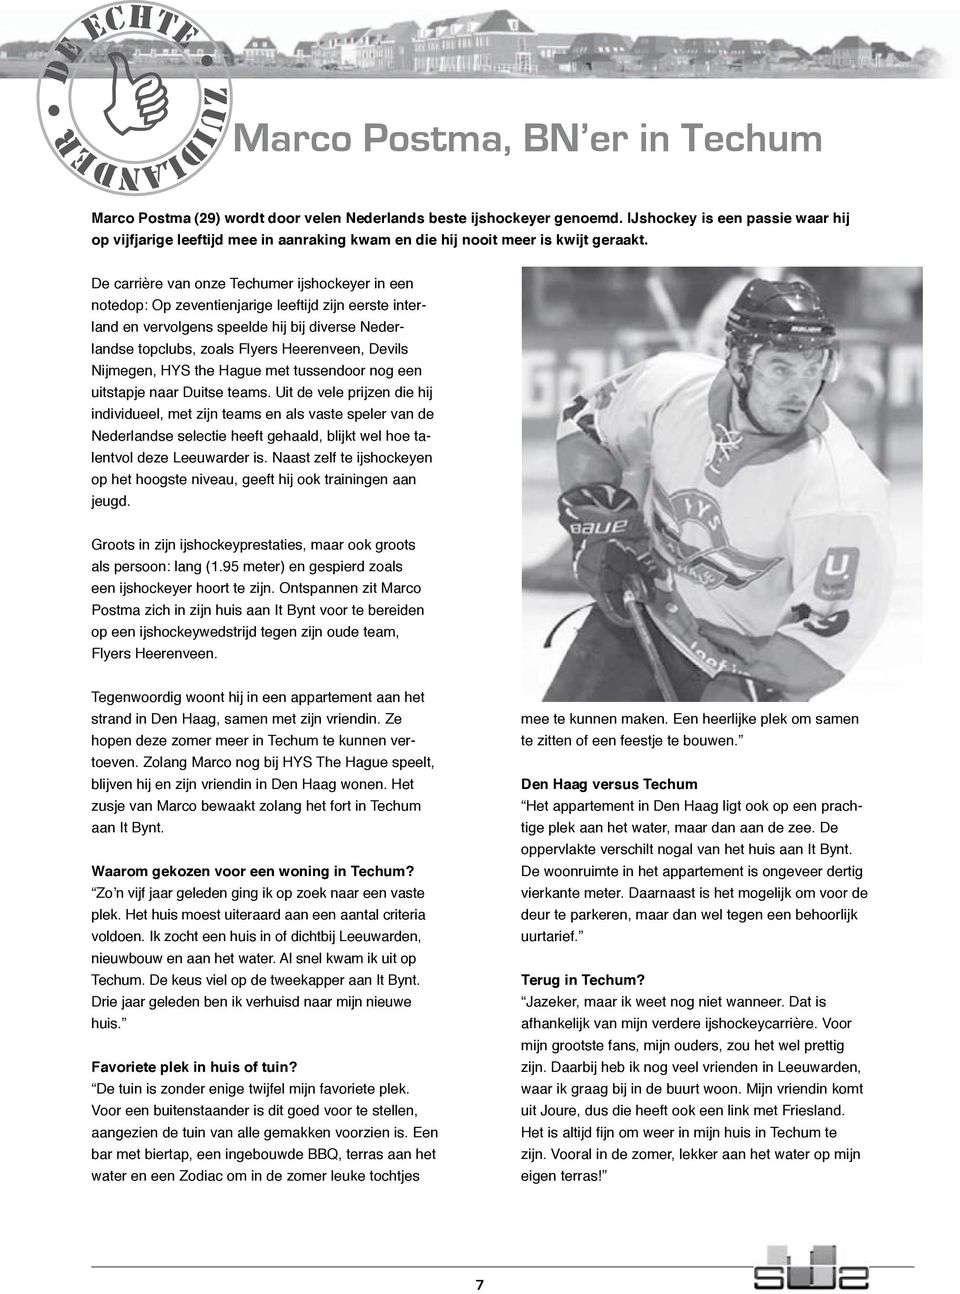 De carrière van onze Techumer ijshockeyer in een notedop: Op zeventienjarige leeftijd zijn eerste interland en vervolgens speelde hij bij diverse Nederlandse topclubs, zoals Flyers Heerenveen, Devils